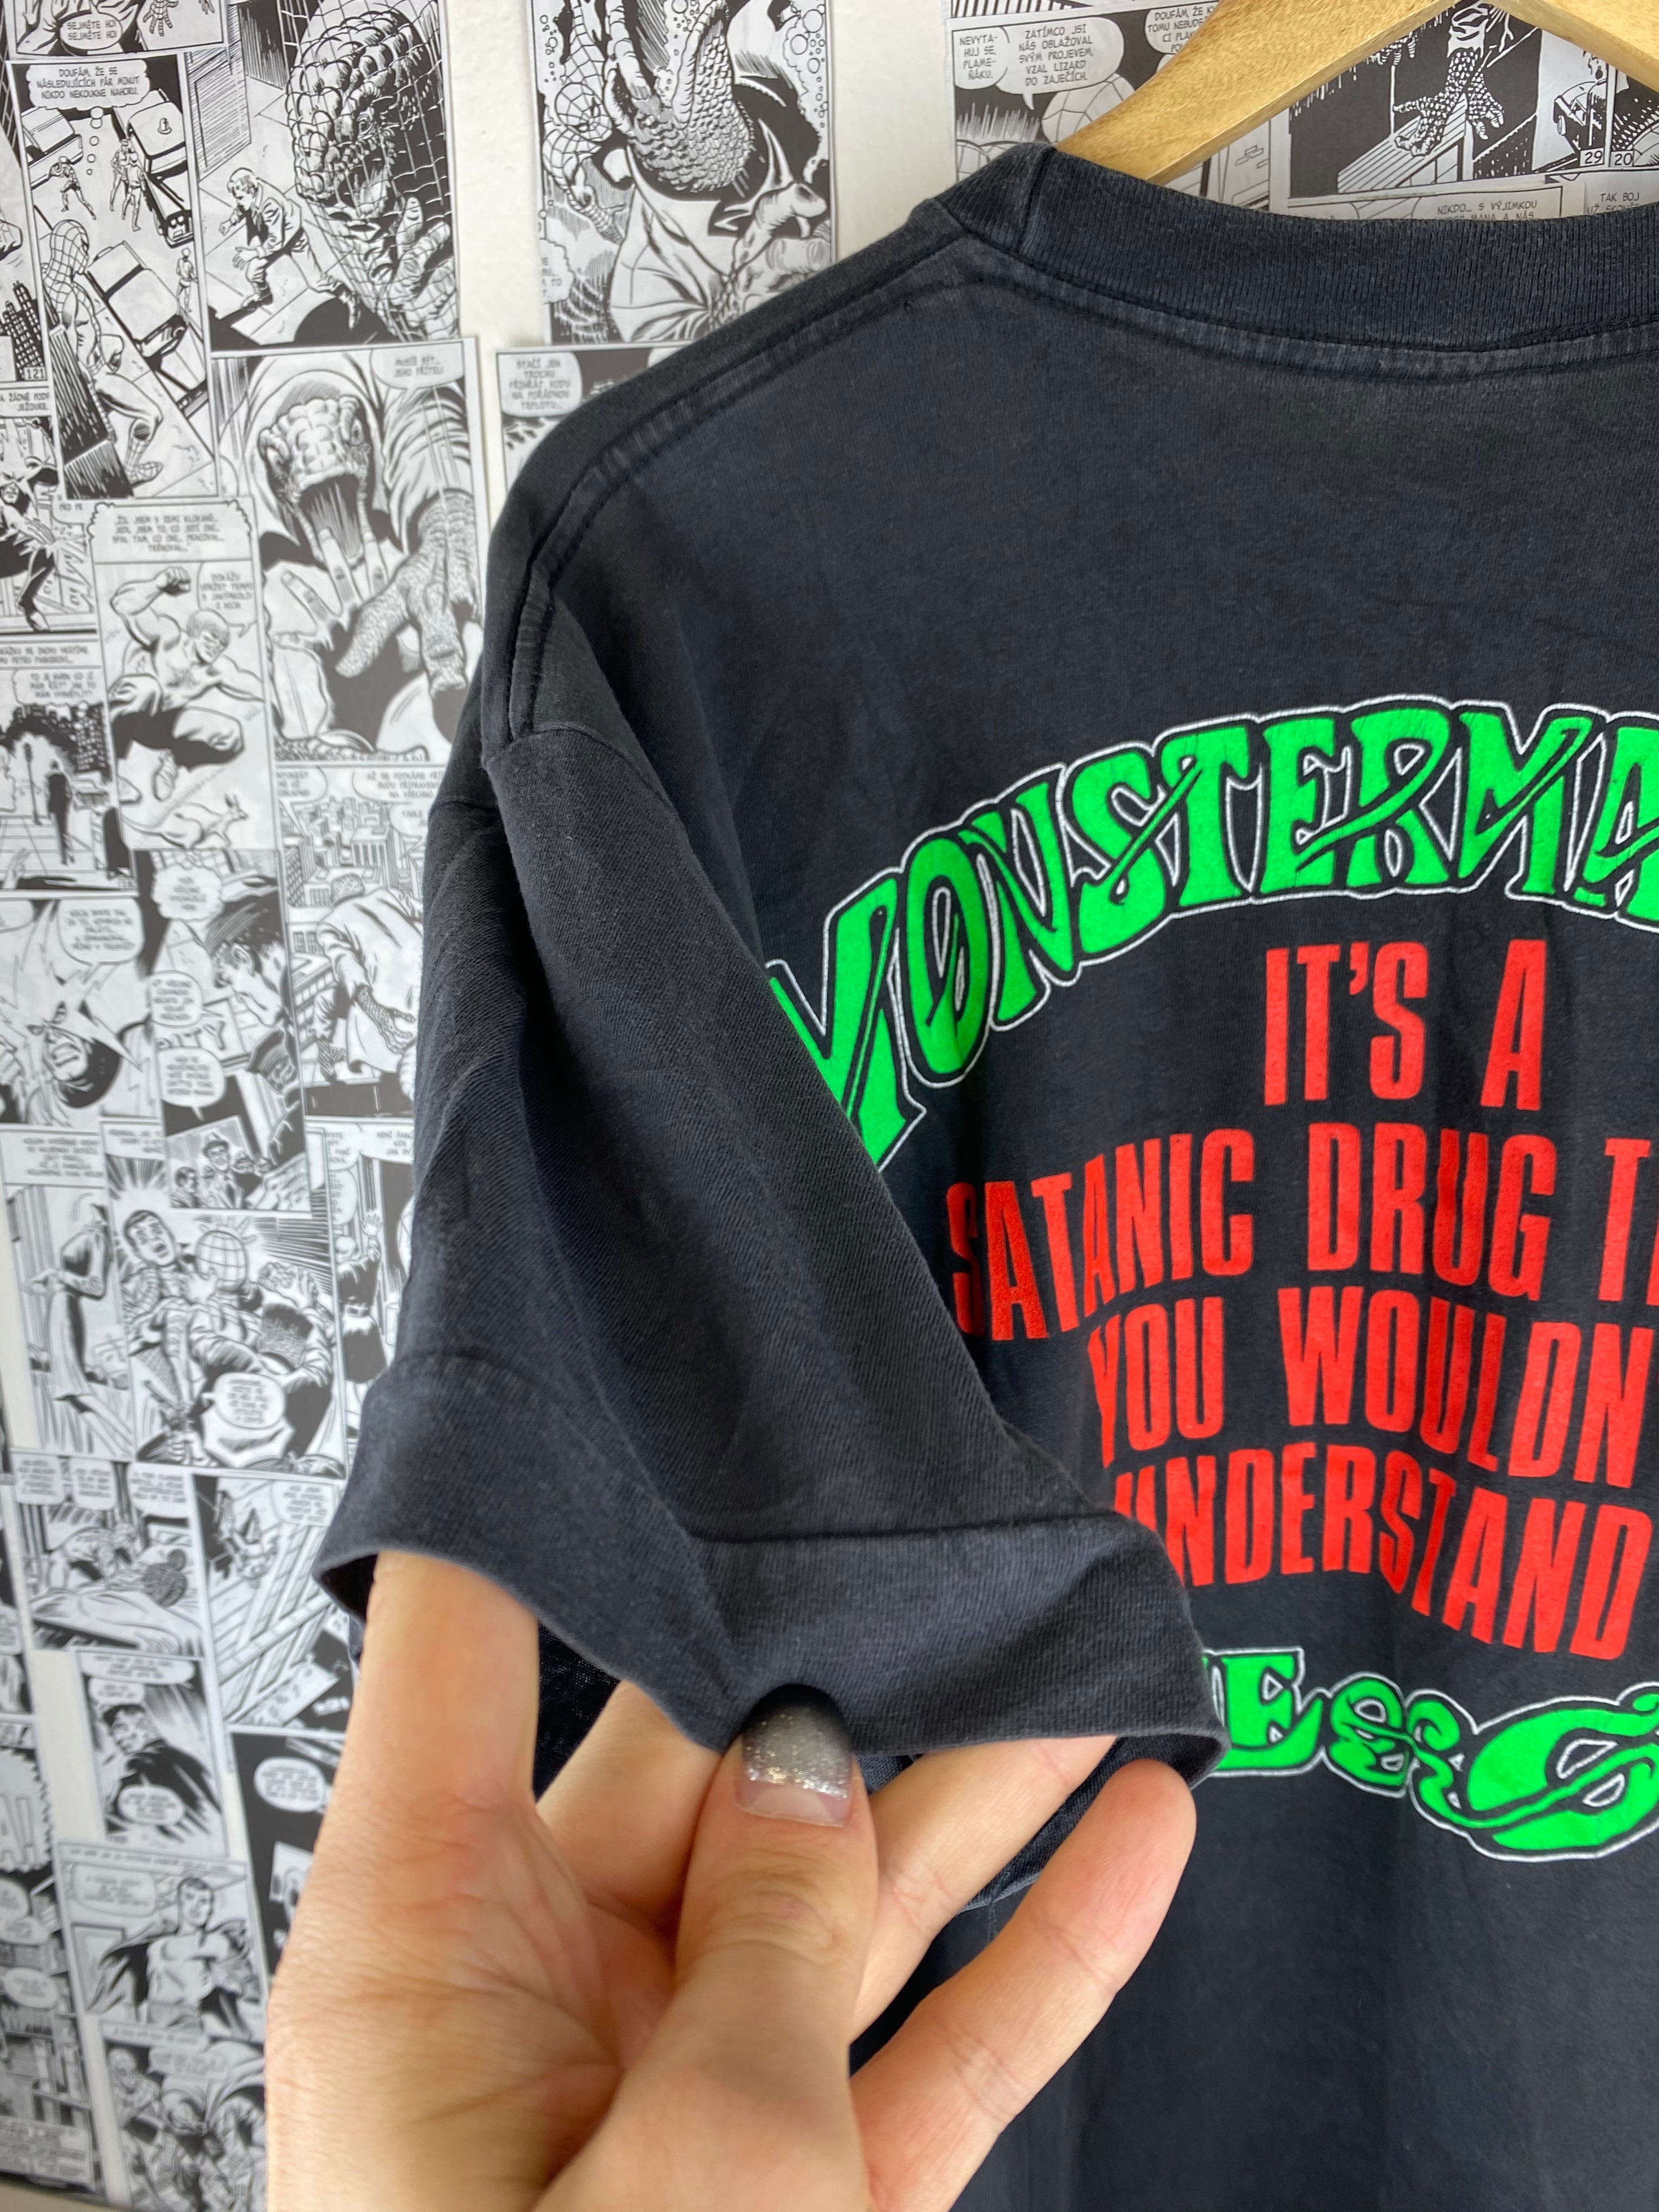 Vintage MonsterMagnet “Spine of God” 90s t-shirt - size XL